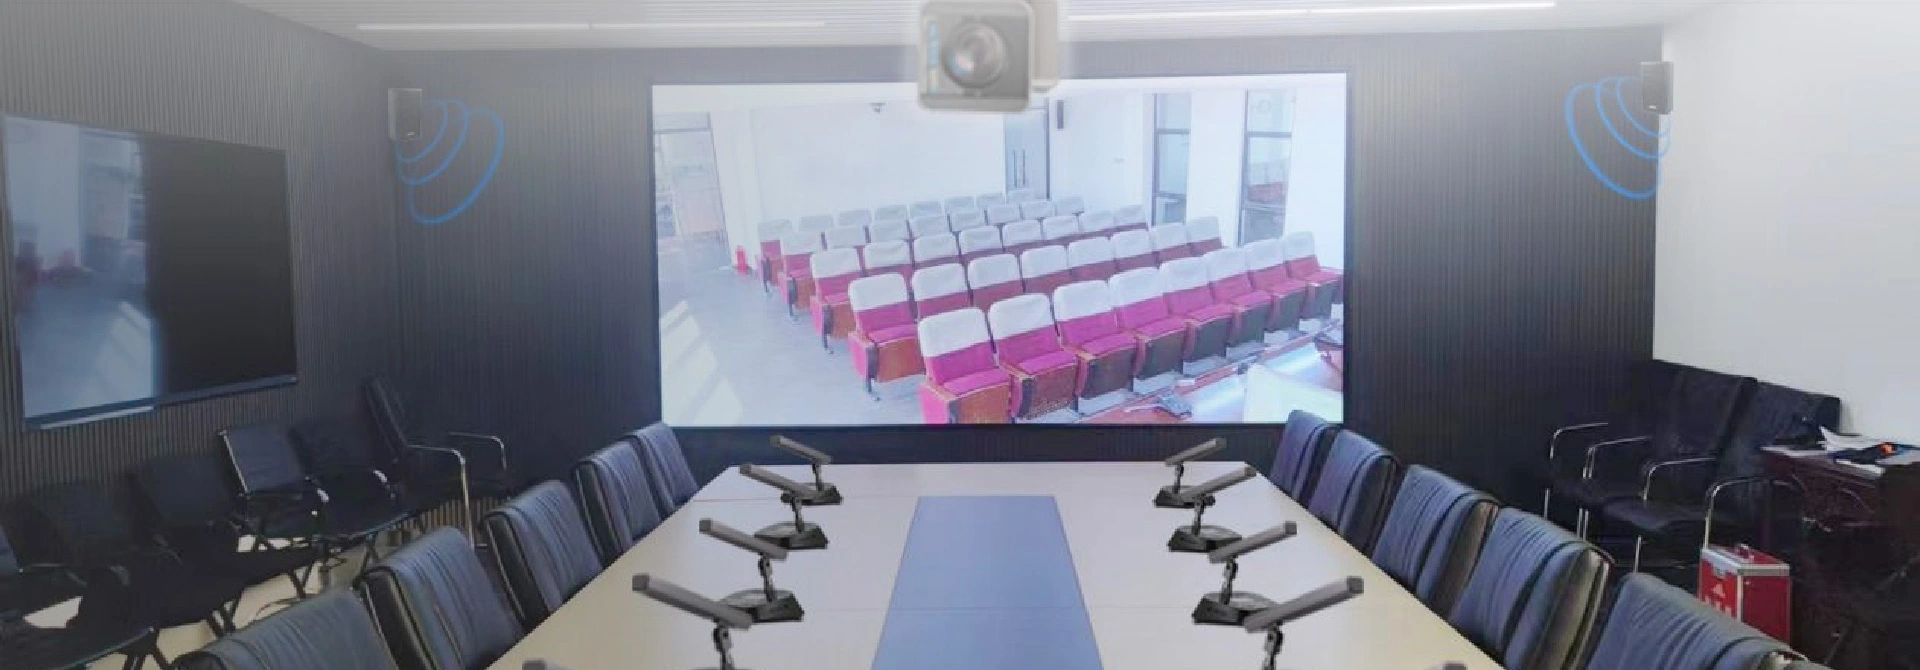 Sistema de conferencias distribuido y sala de conferencias inteligente